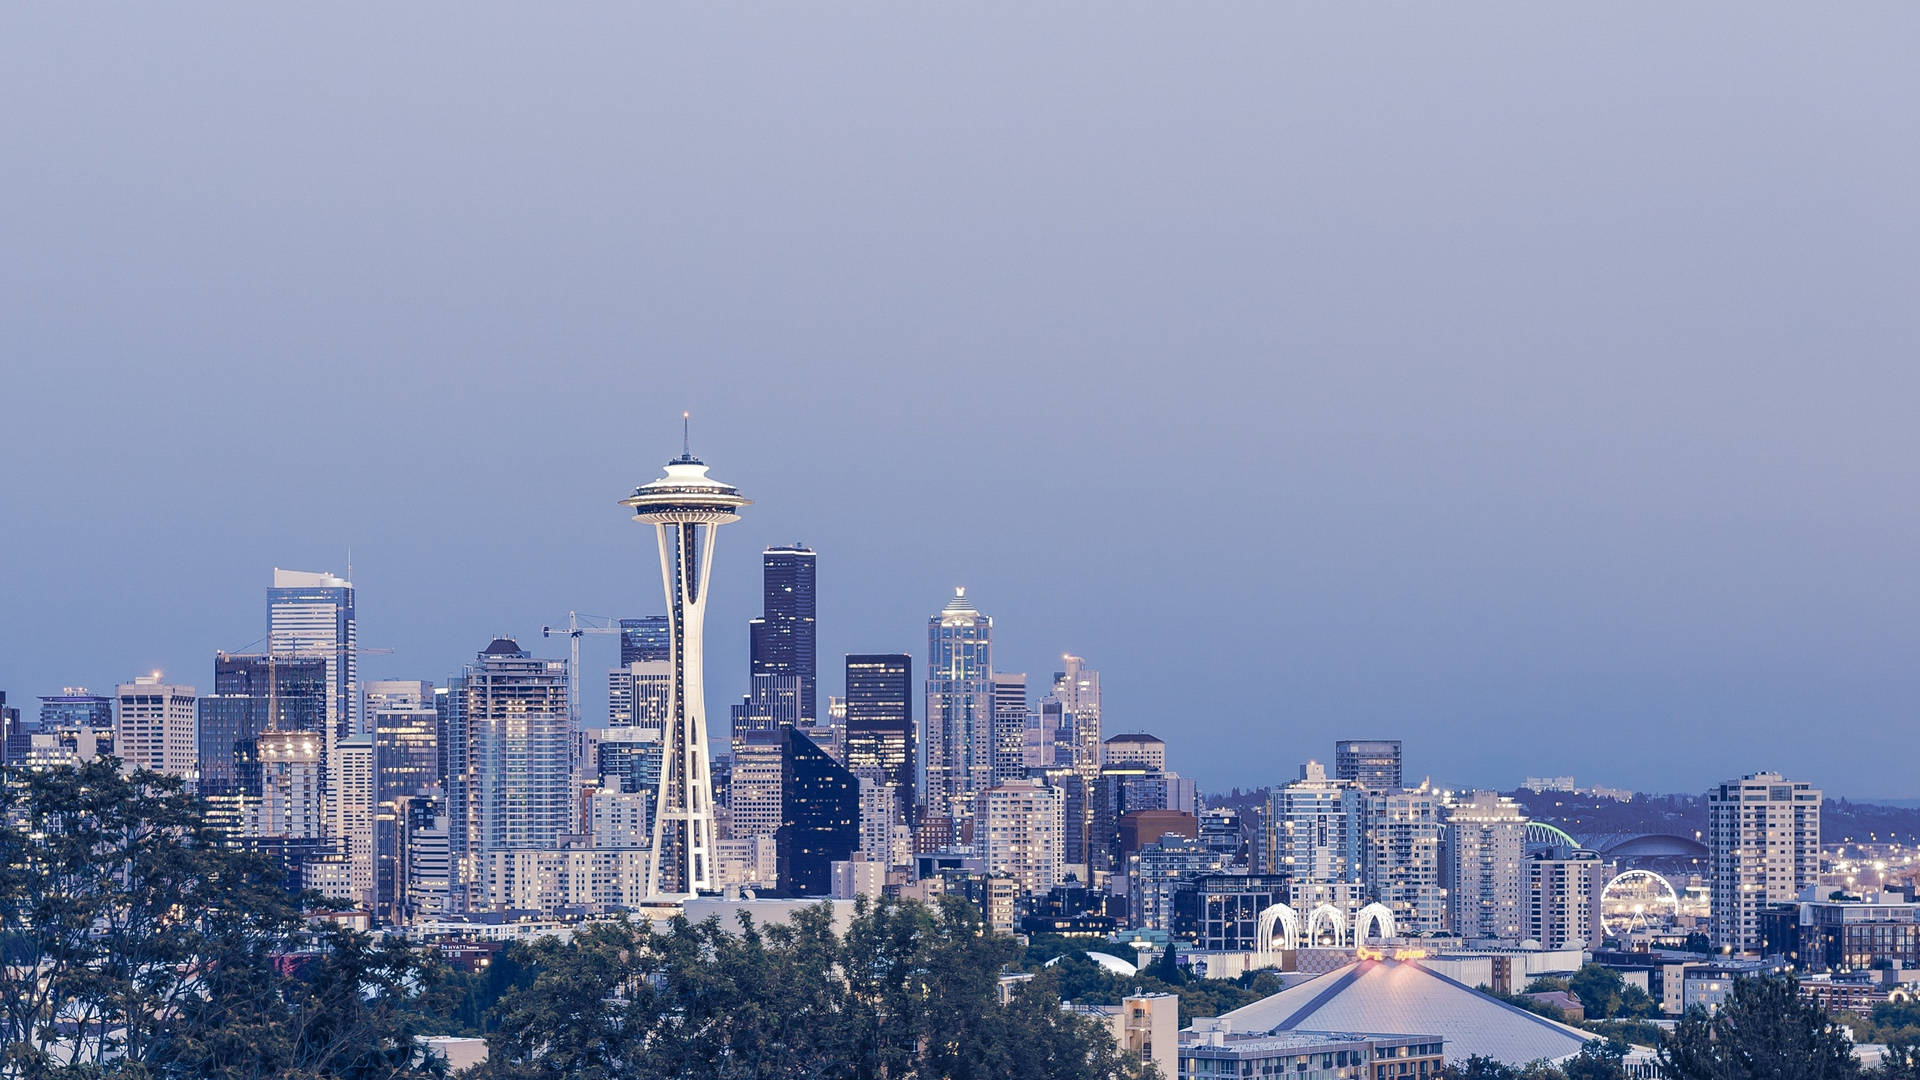 Winter-like Beautiful Seattle Skyline Wallpaper